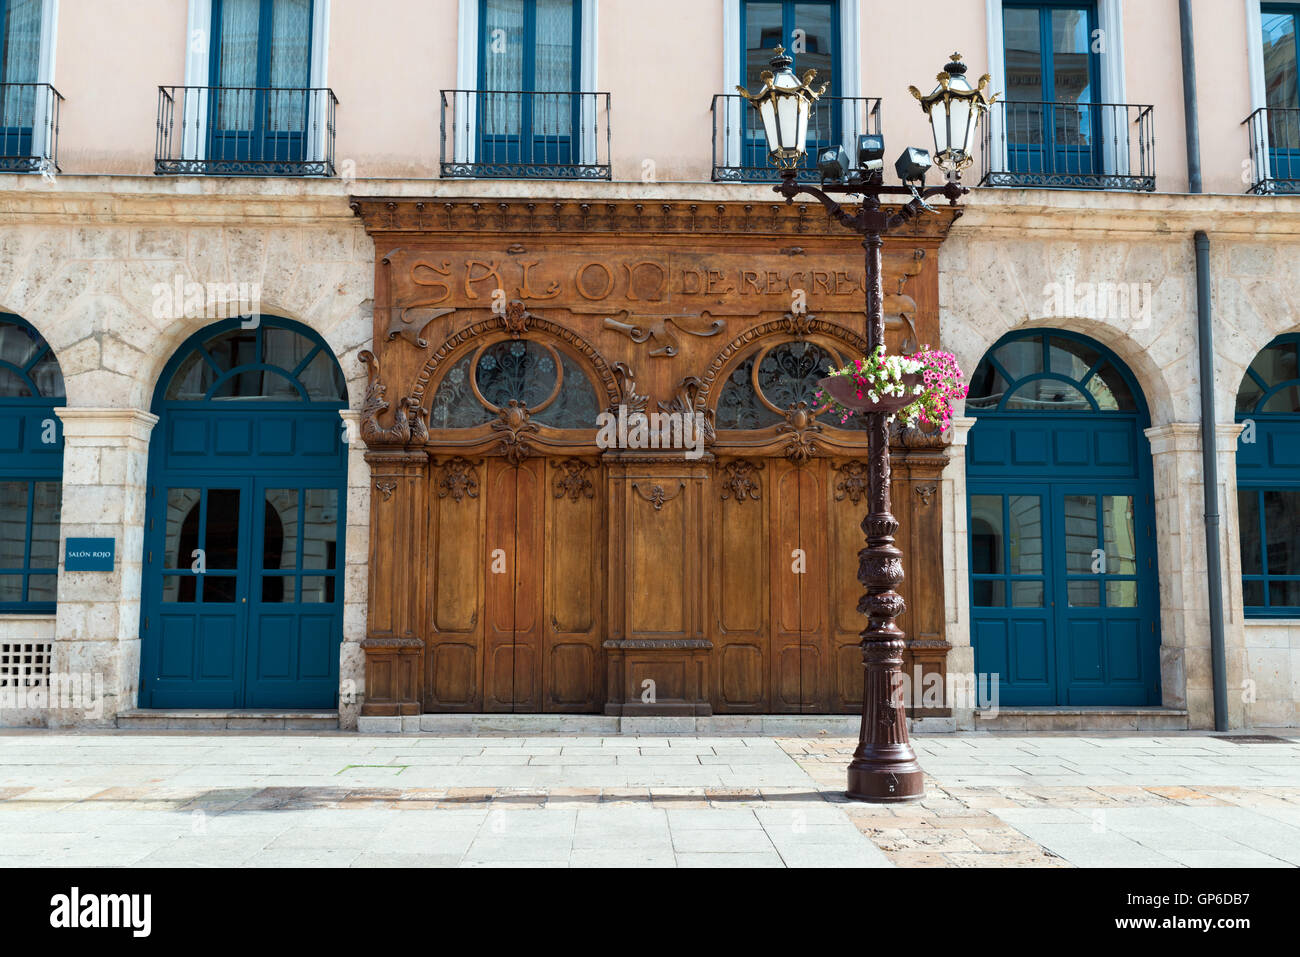 BURGOS, Spagna - 31 August, 2016: Salon Recreativo (sala ricreativa), facciata in legno costruito in stile Art Nouveau nel centro storico Foto Stock